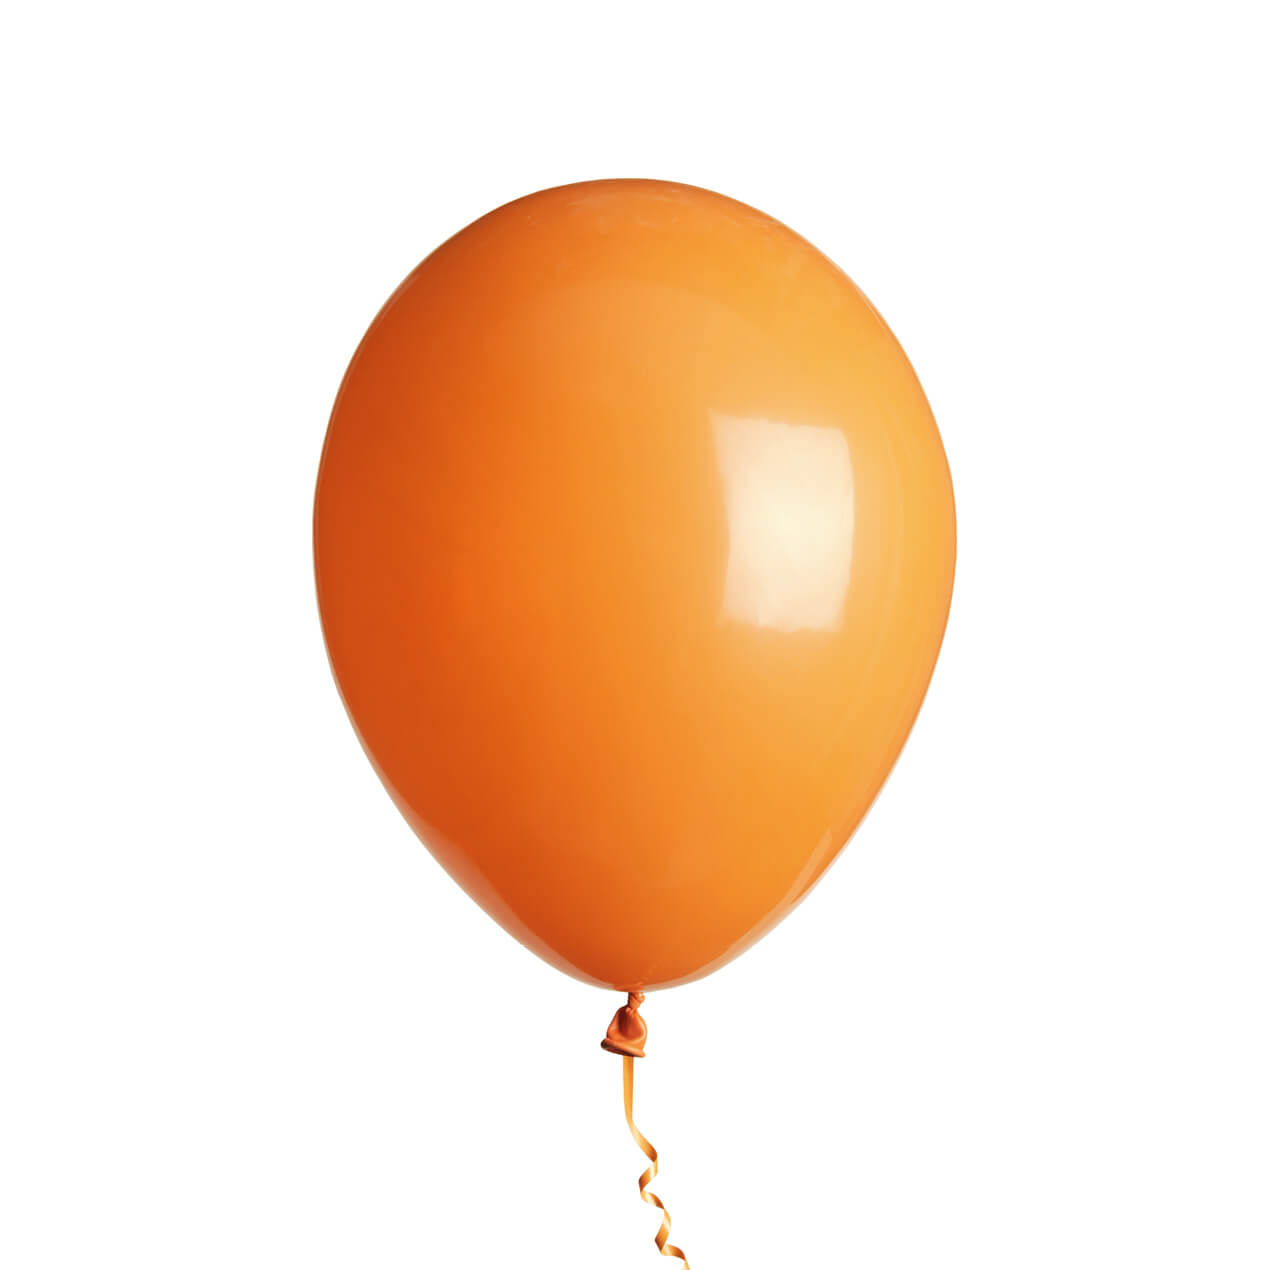 Orange ballon on a white background